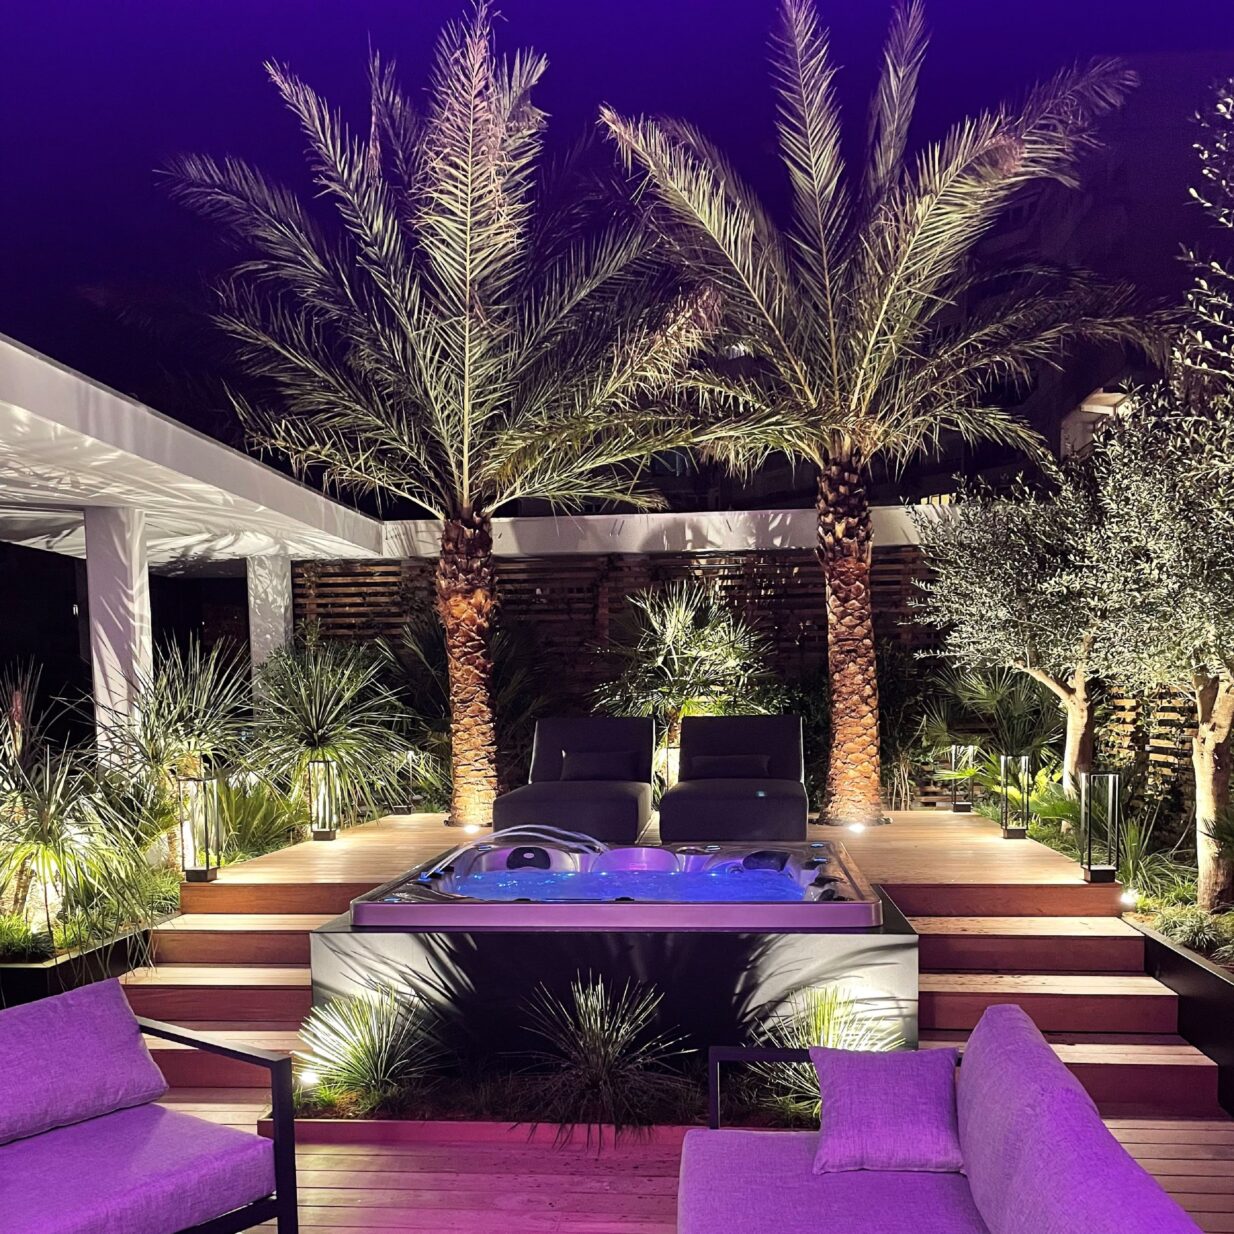 Ce rooftop de 150m2 offre un cadre luxueux et moderne, idéal pour vos événements. Sa terrasse spacieuse est ornée de palmiers et d'une végétation luxuriante, et offre une vue imprenable.